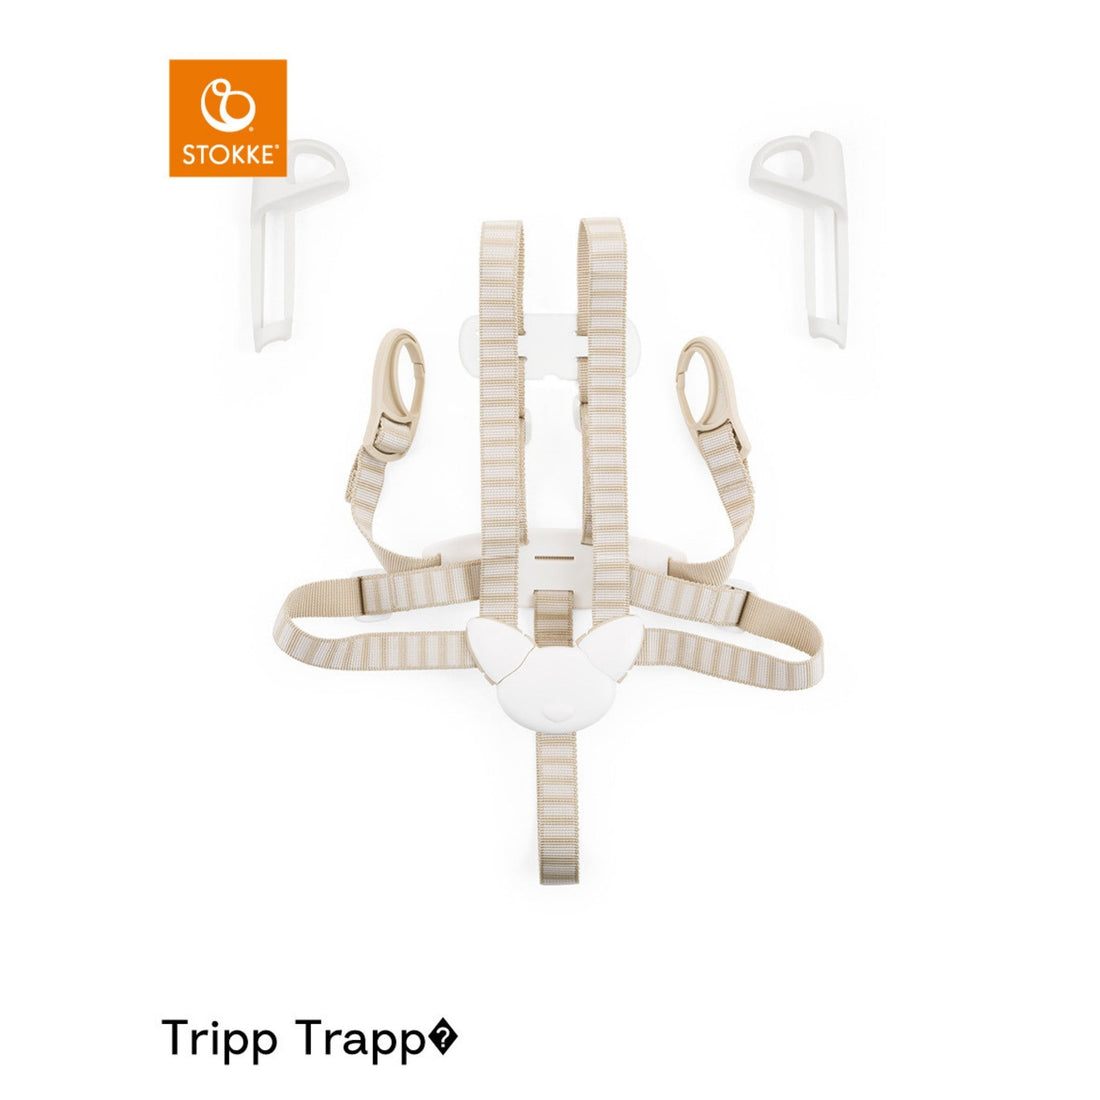 Stokke Tripp Trapp Harness - Beige